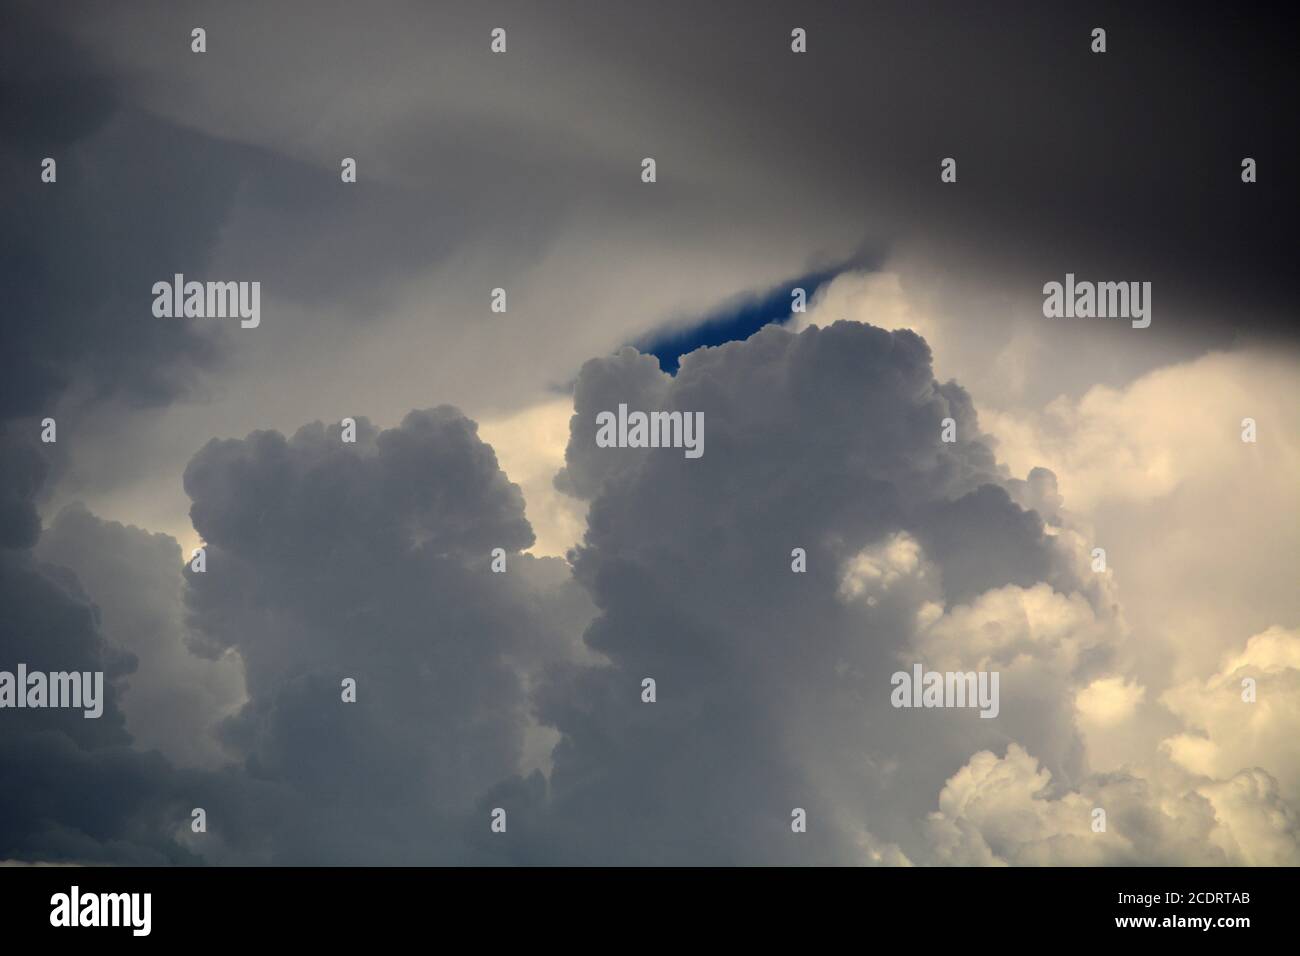 Les nuages Cumulus remplissent le ciel au-dessus du sud-ouest américain. Banque D'Images